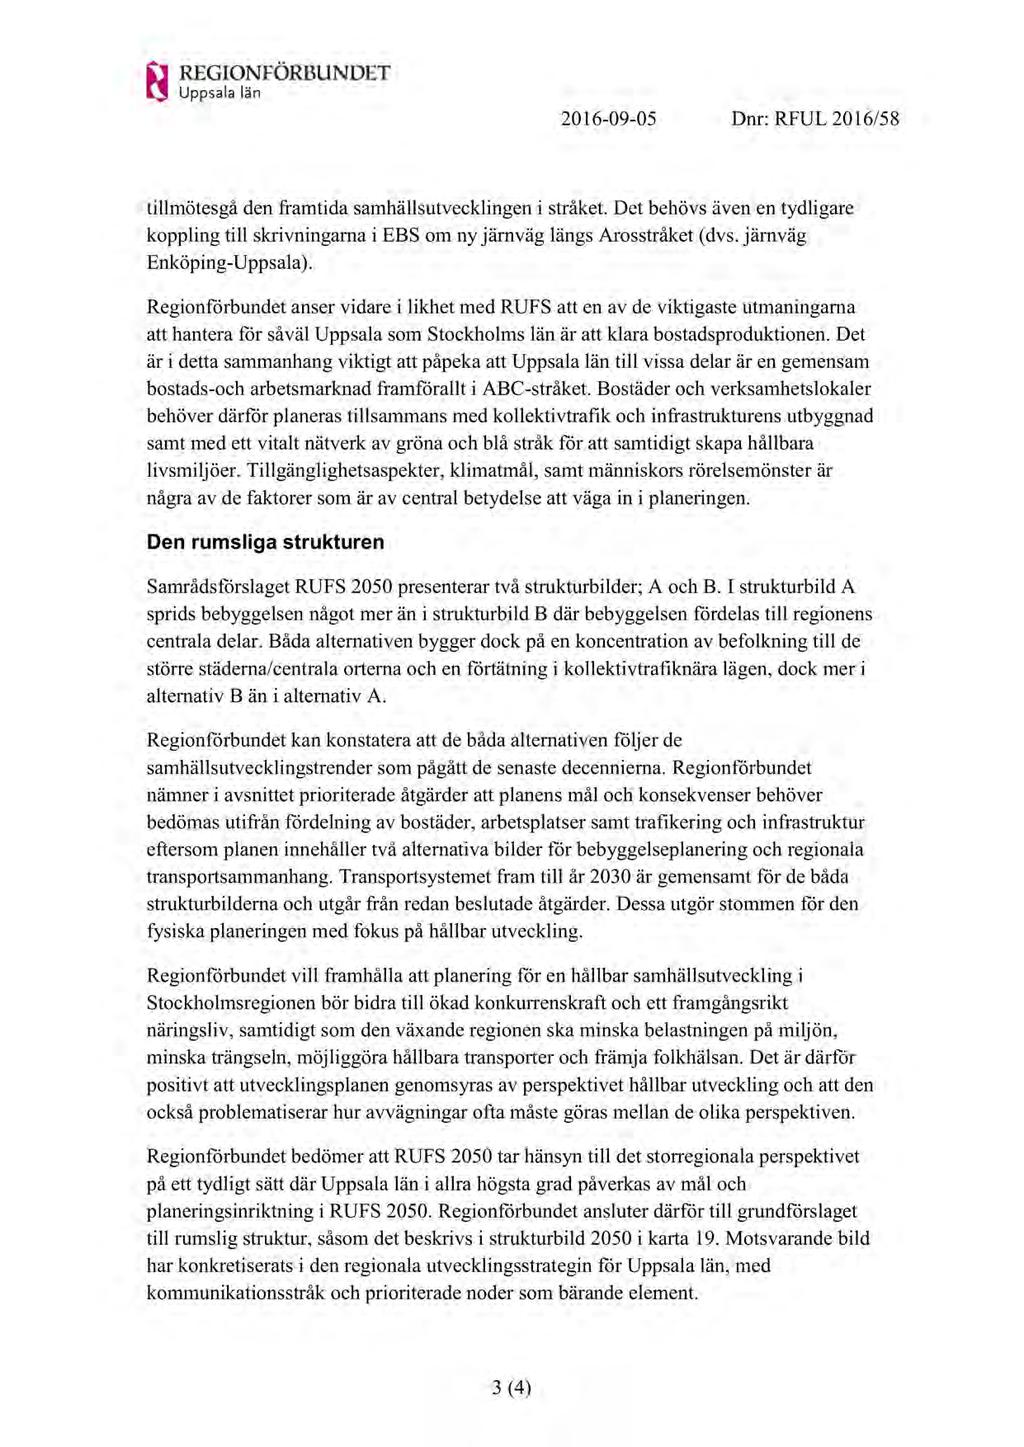 2016-09-05 Dnr: RFUL 2016/58 tillmötesgåden framtidasamhällsutvecklingen i stråket.det behövsävenen tydligare koppling till skrivningarnai EBS om ny järnväglängsarosstråket(dvs.